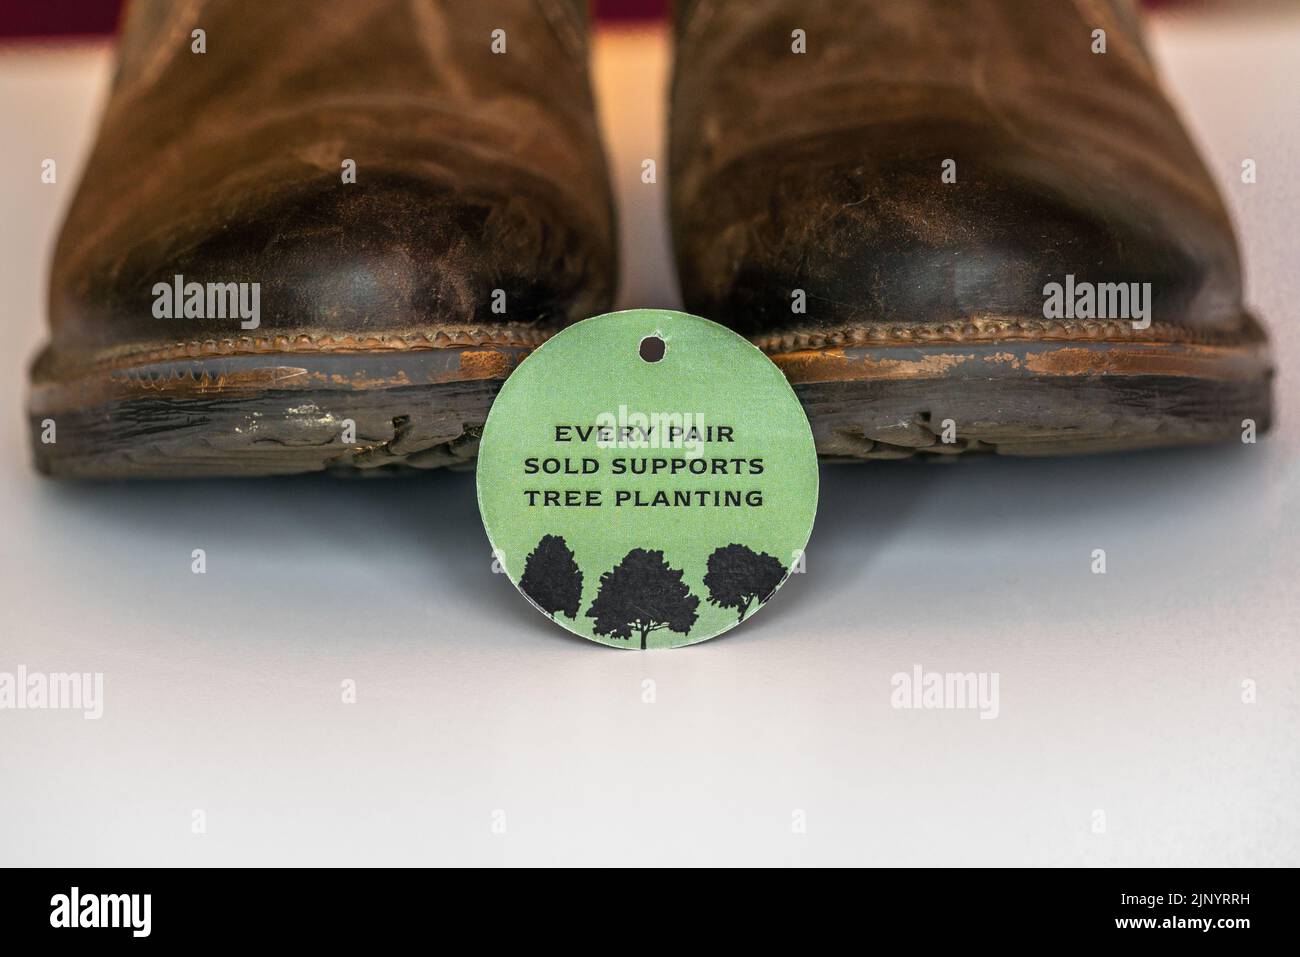 Chaque paire vendue soutient la plantation d'arbres - écolabel vert sur une paire de bottes en cuir, durable mode, Royaume-Uni Banque D'Images